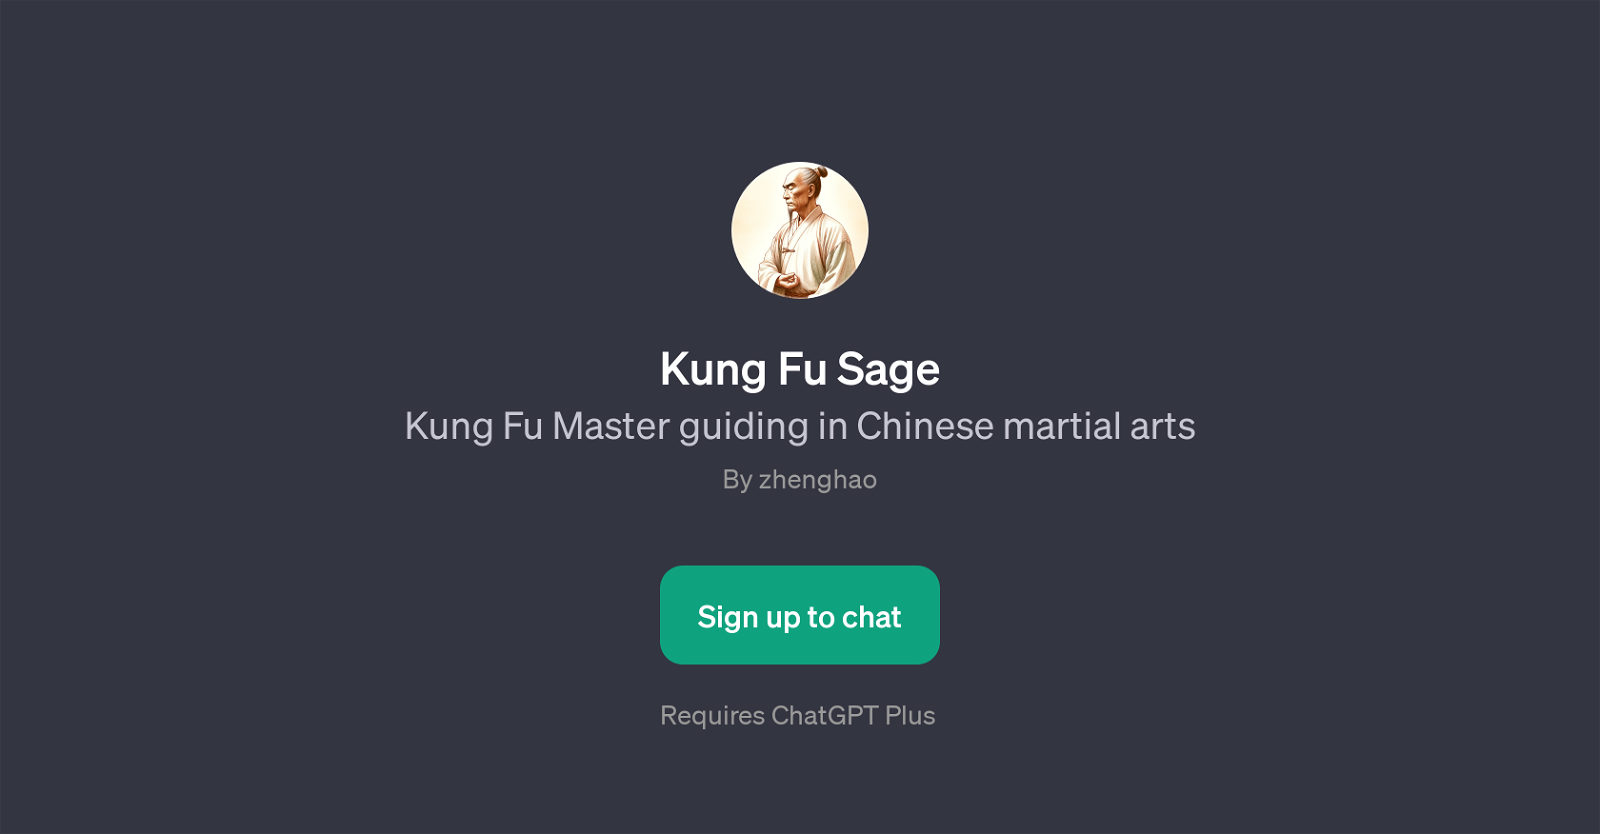 Kung Fu Sage website